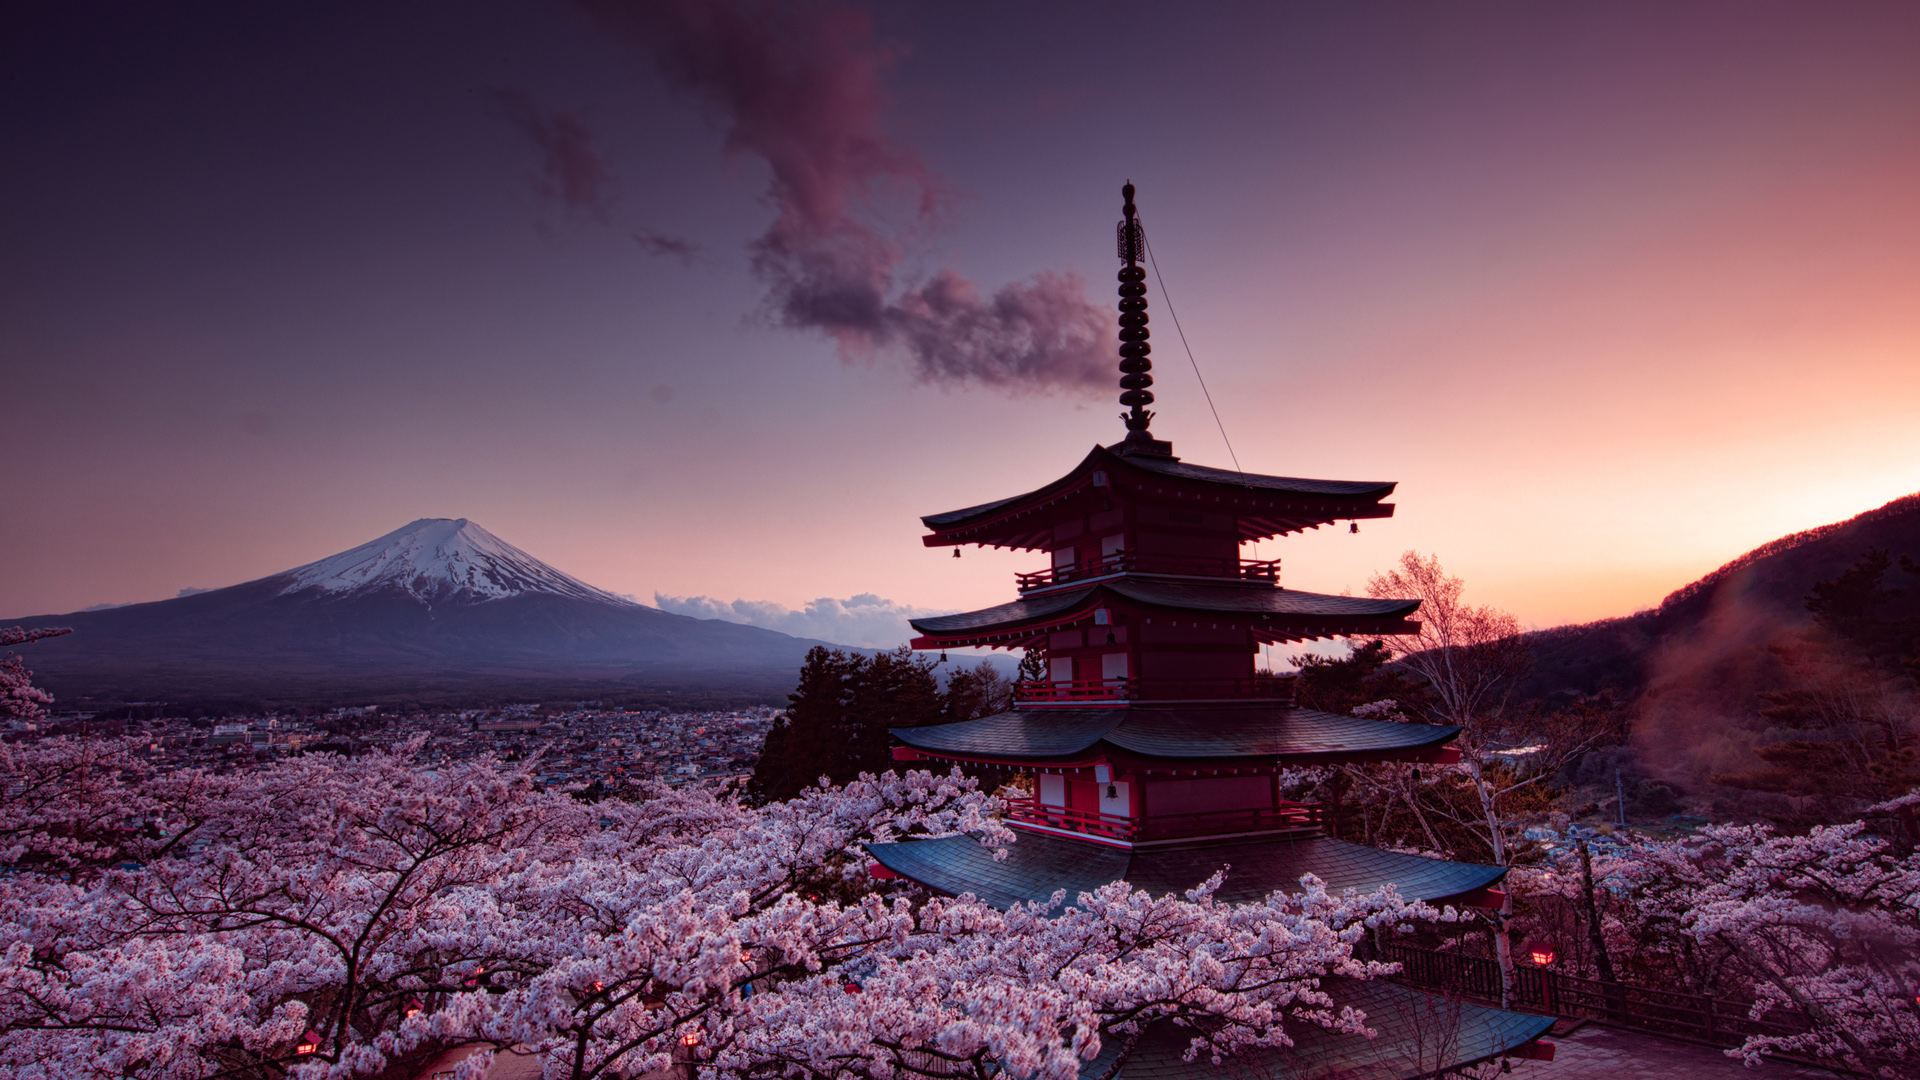 富士山,樱花,塔,日本风景桌面壁纸